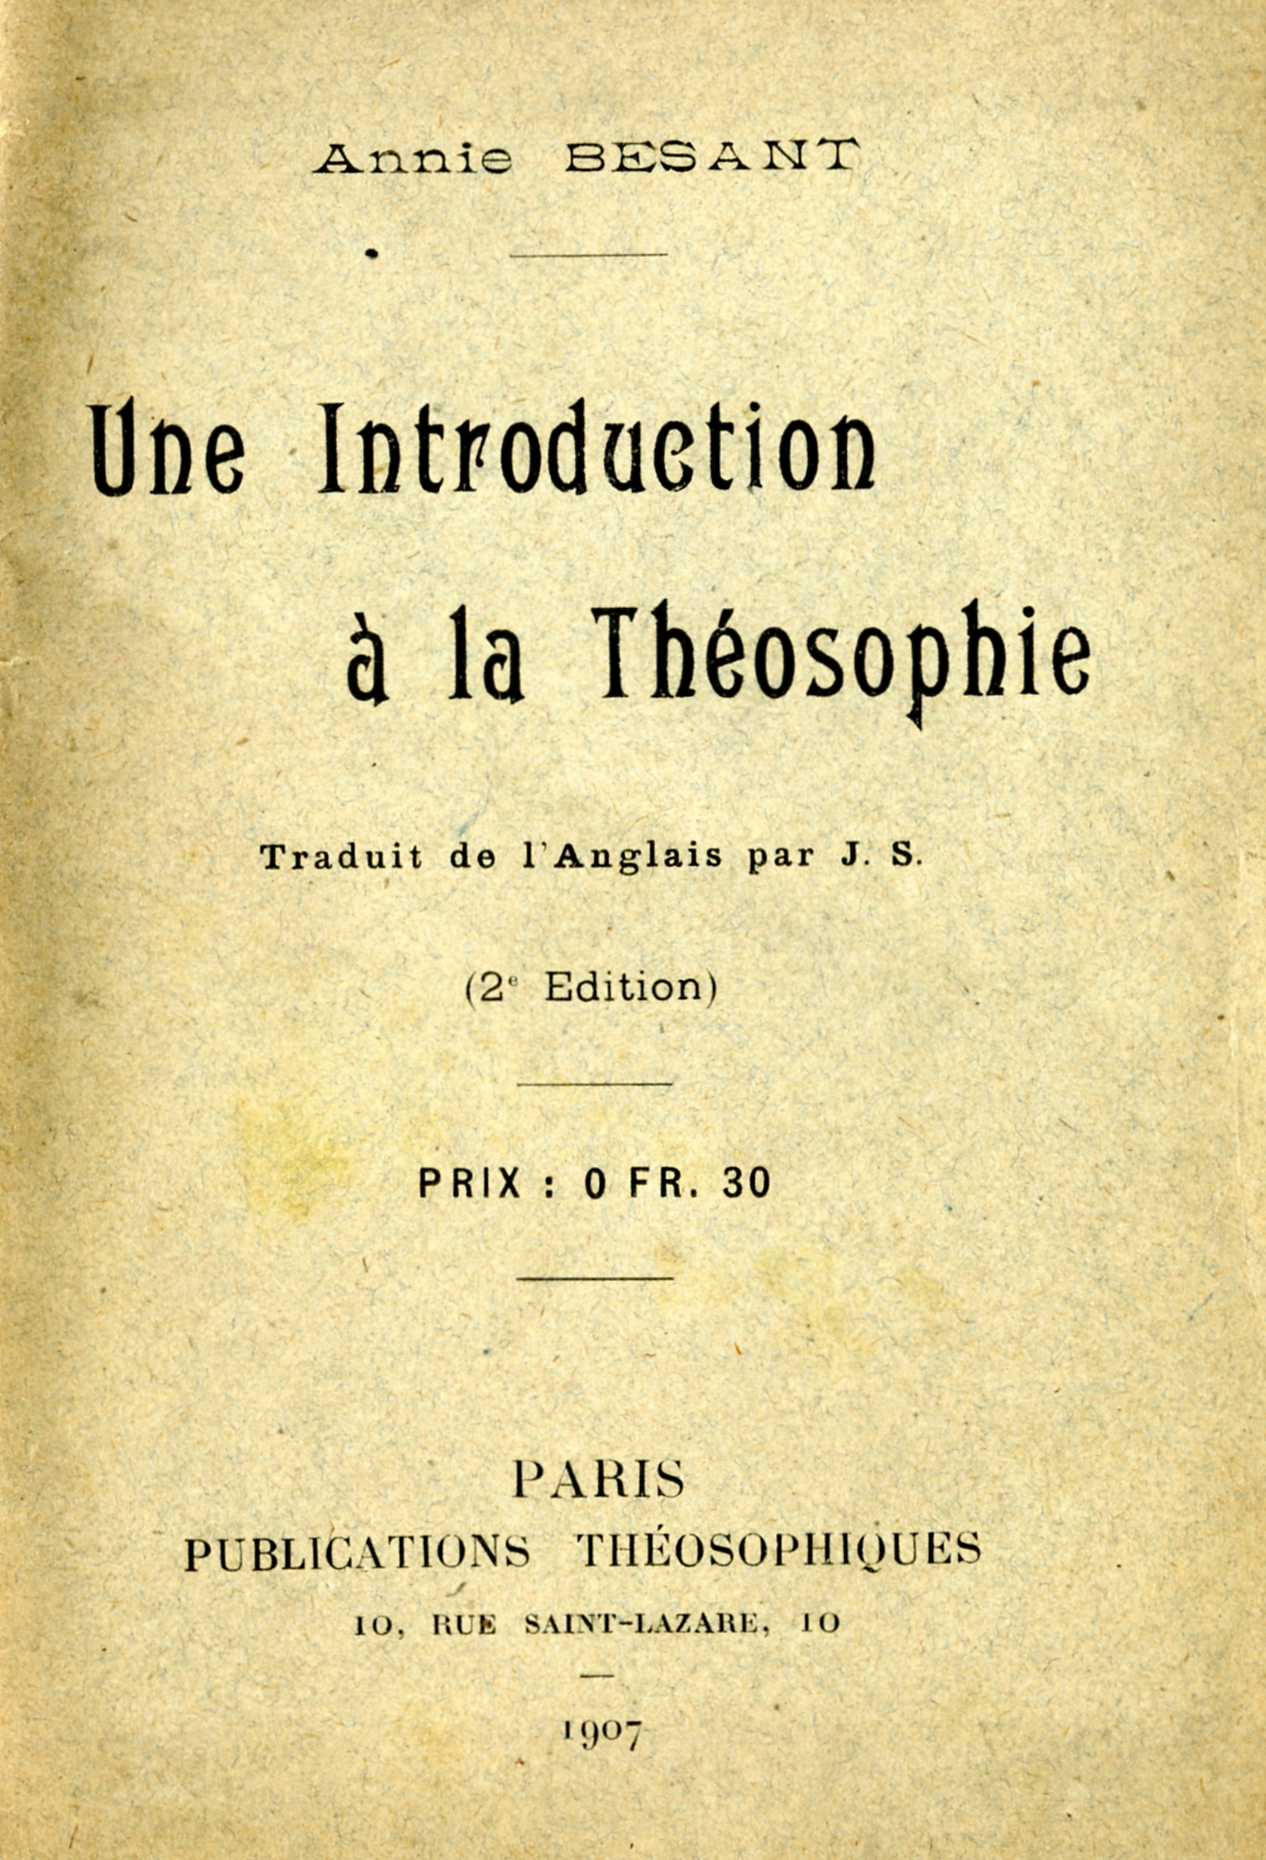 Annie Besant, Introduction
          a la Thosophie, Pars, 1907.